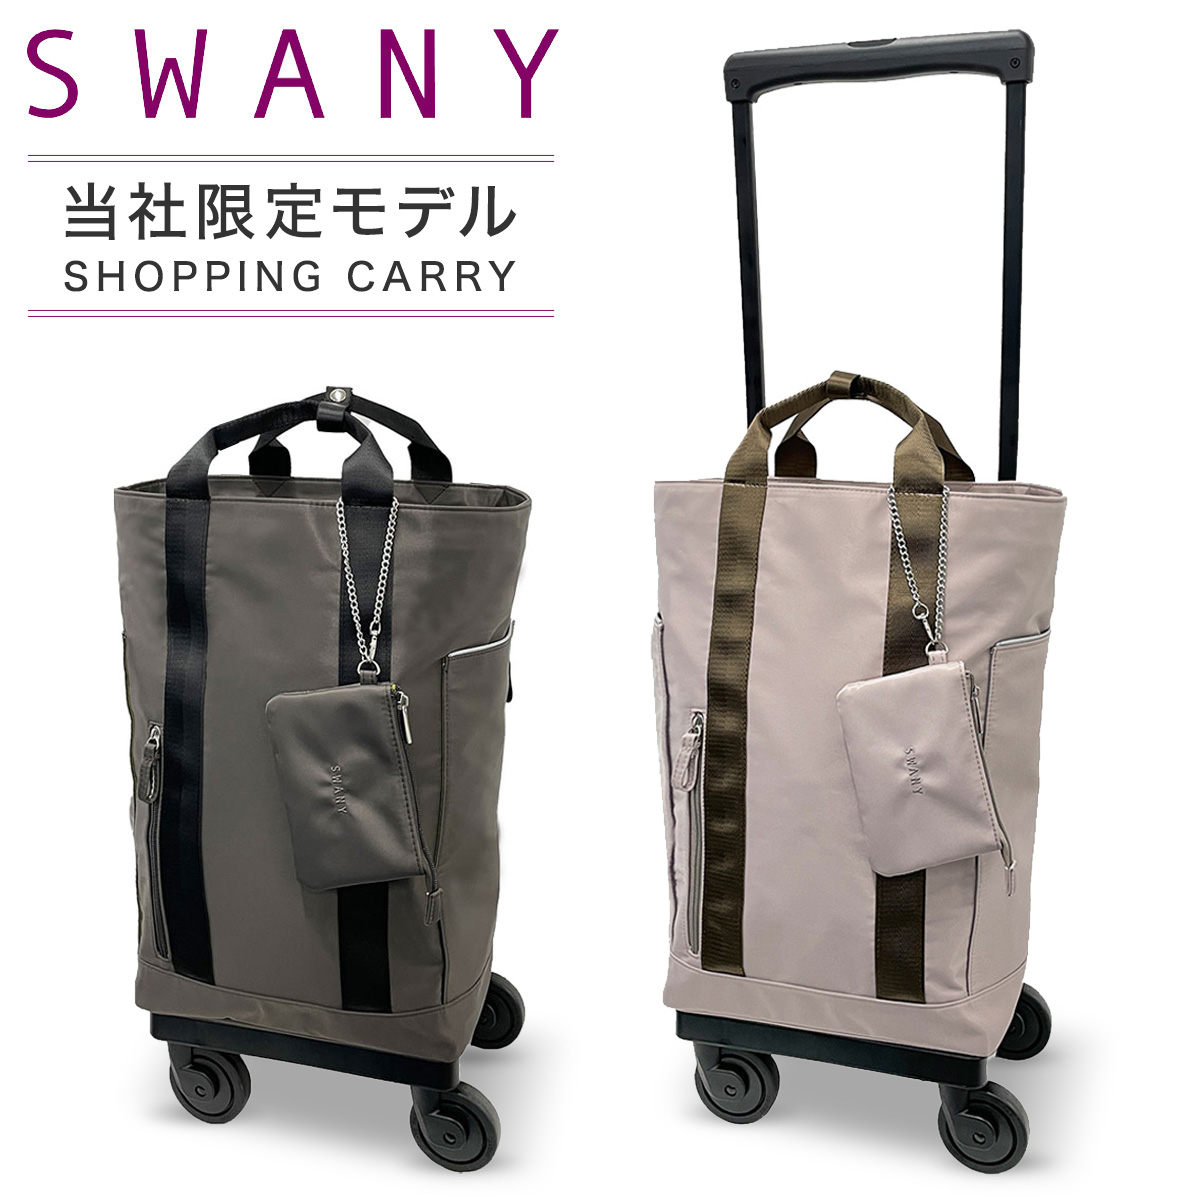 スワニー キャリーバッグ 東京デリカオリジナルD-580 SWANY 